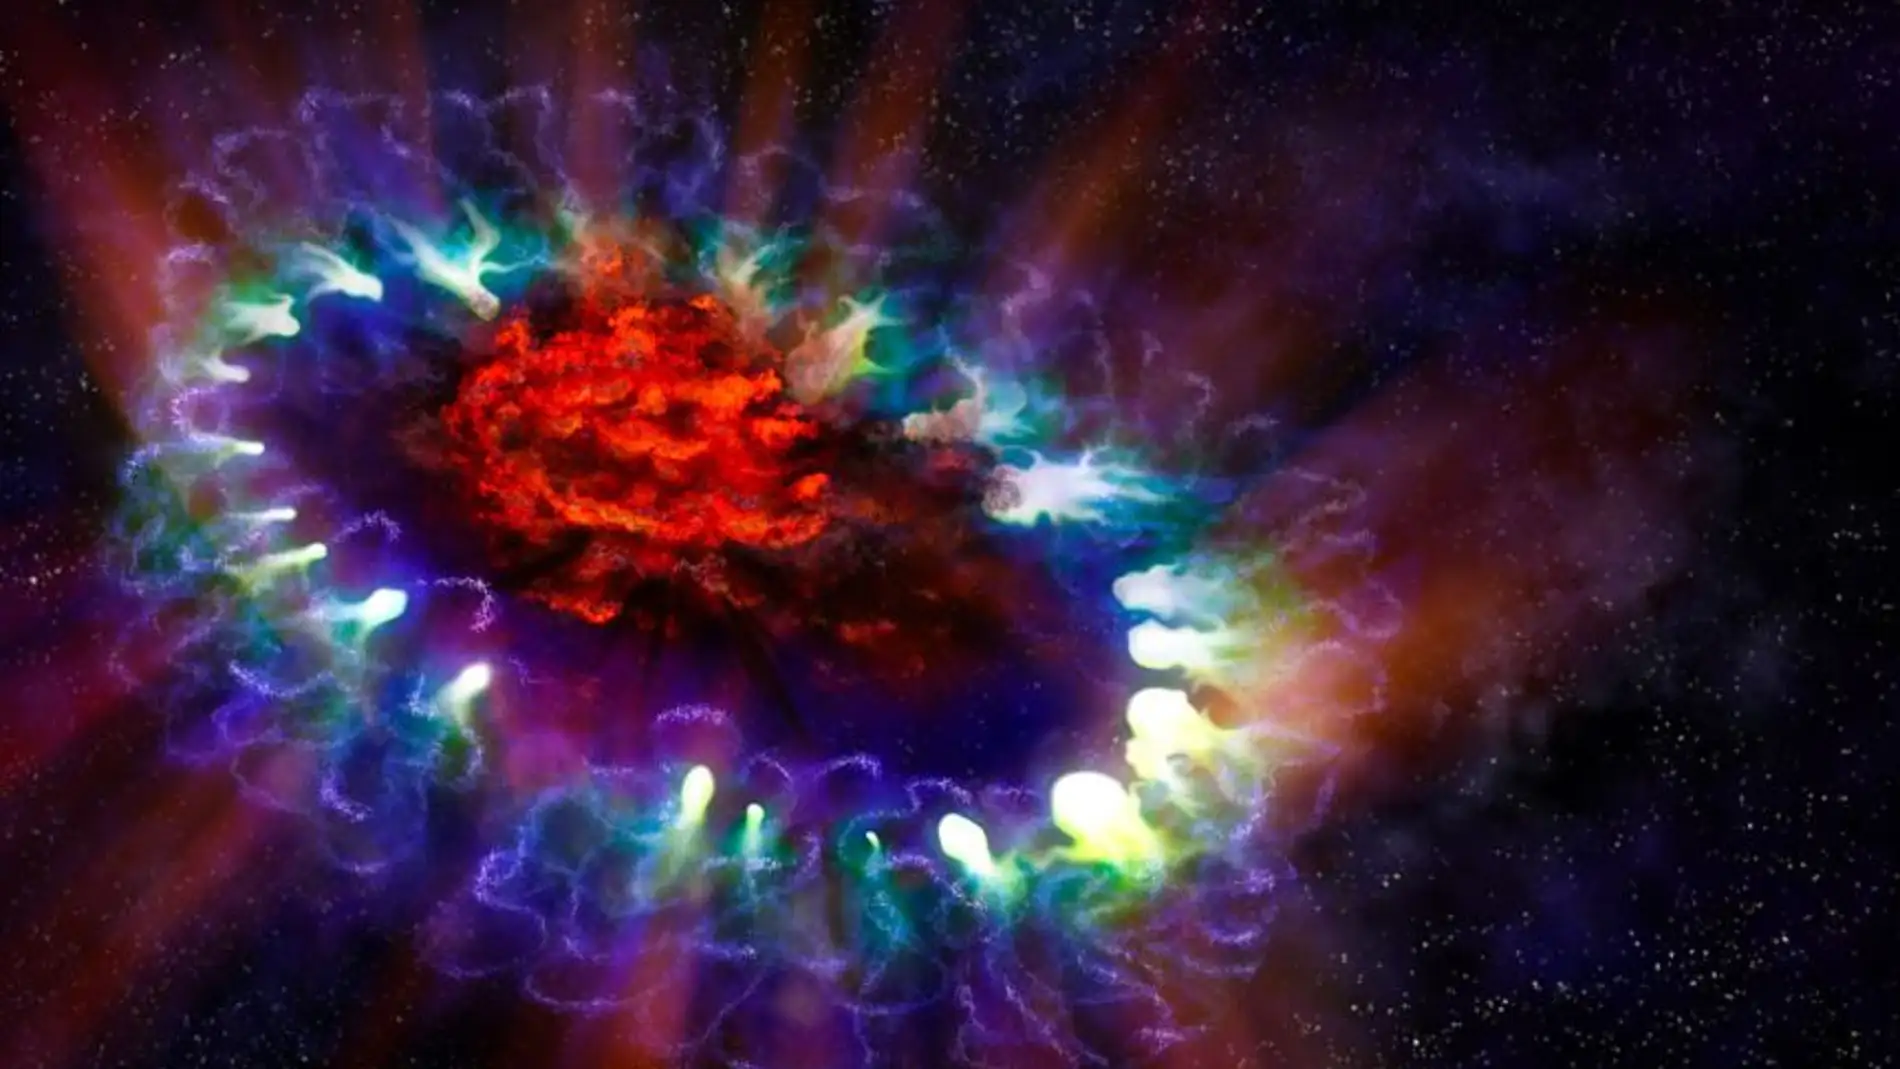 Imagen artística de la remanente de supernova SN 1987A basada en los datos reales obtenidos por ALMA y los telescopios espaciales Hubble y Chandra